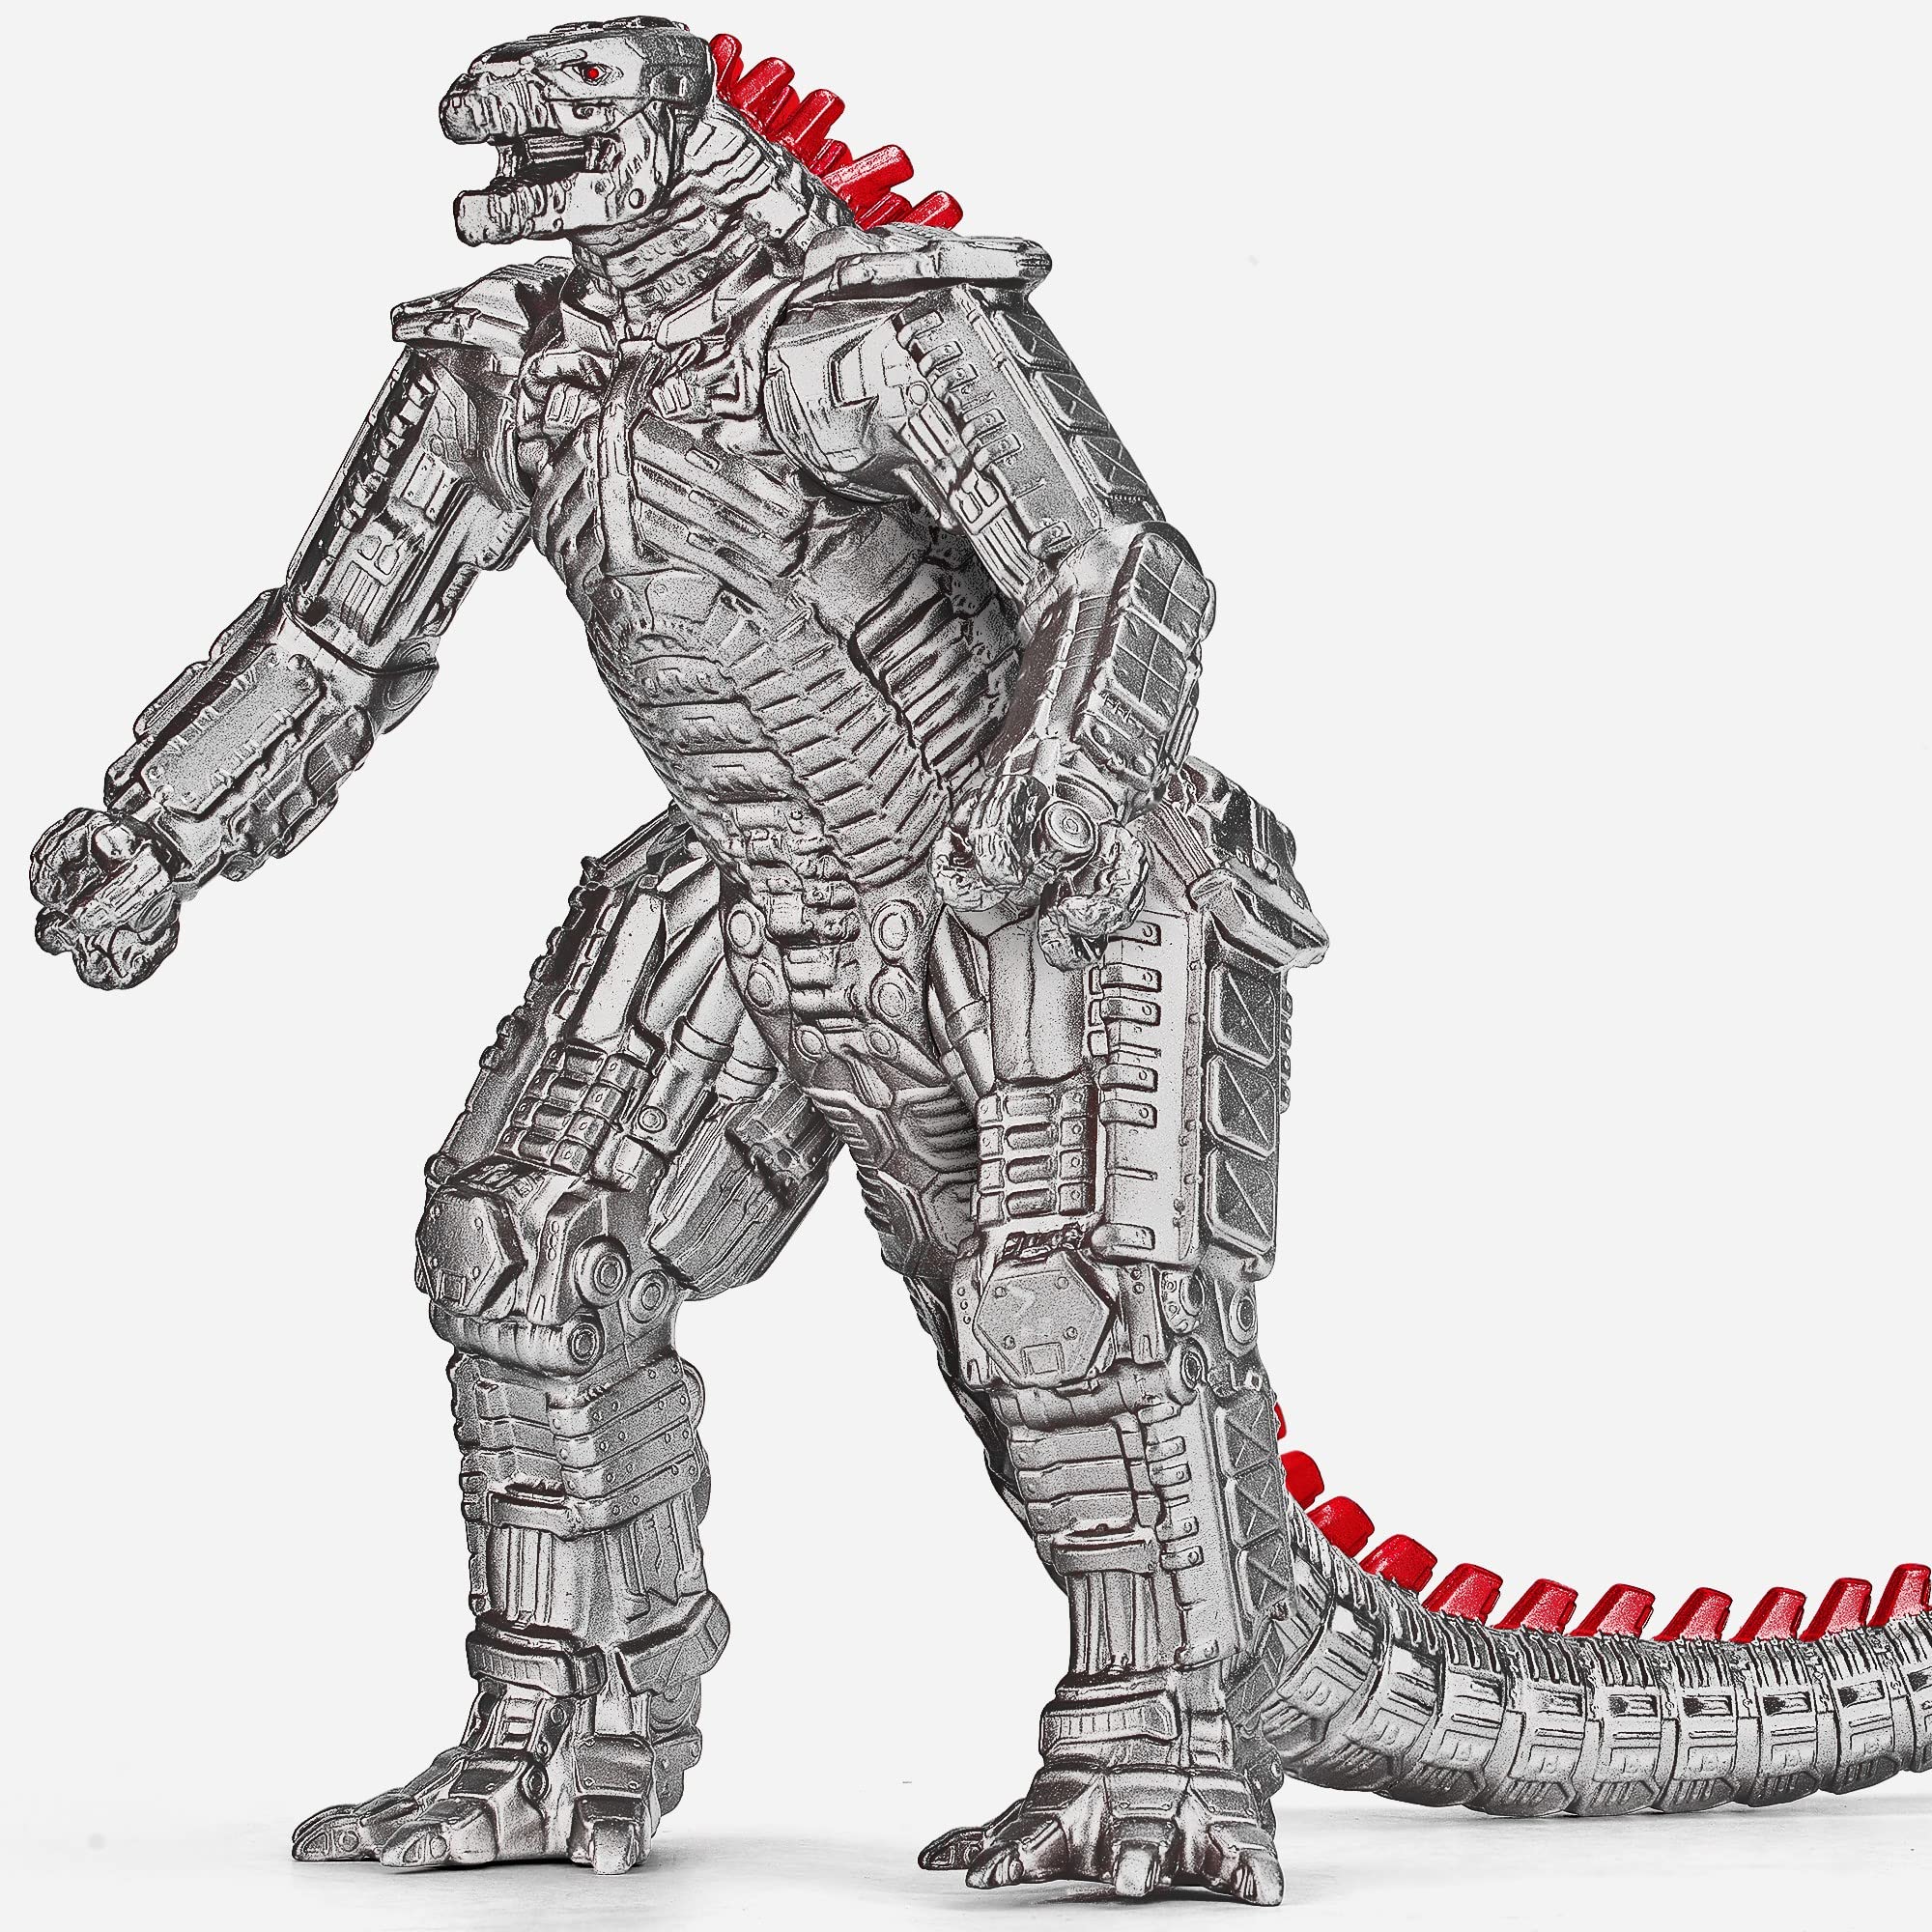 Hãy sắm ngay một mô hình Mechagodzilla của riêng mình và khám phá thế giới quái vật huyền thoại cùng nó. Được chế tạo với công nghệ cao, Mechagodzilla sẽ là món đồ chơi rất phù hợp cho những ai trót yêu mê thế giới Godzilla.